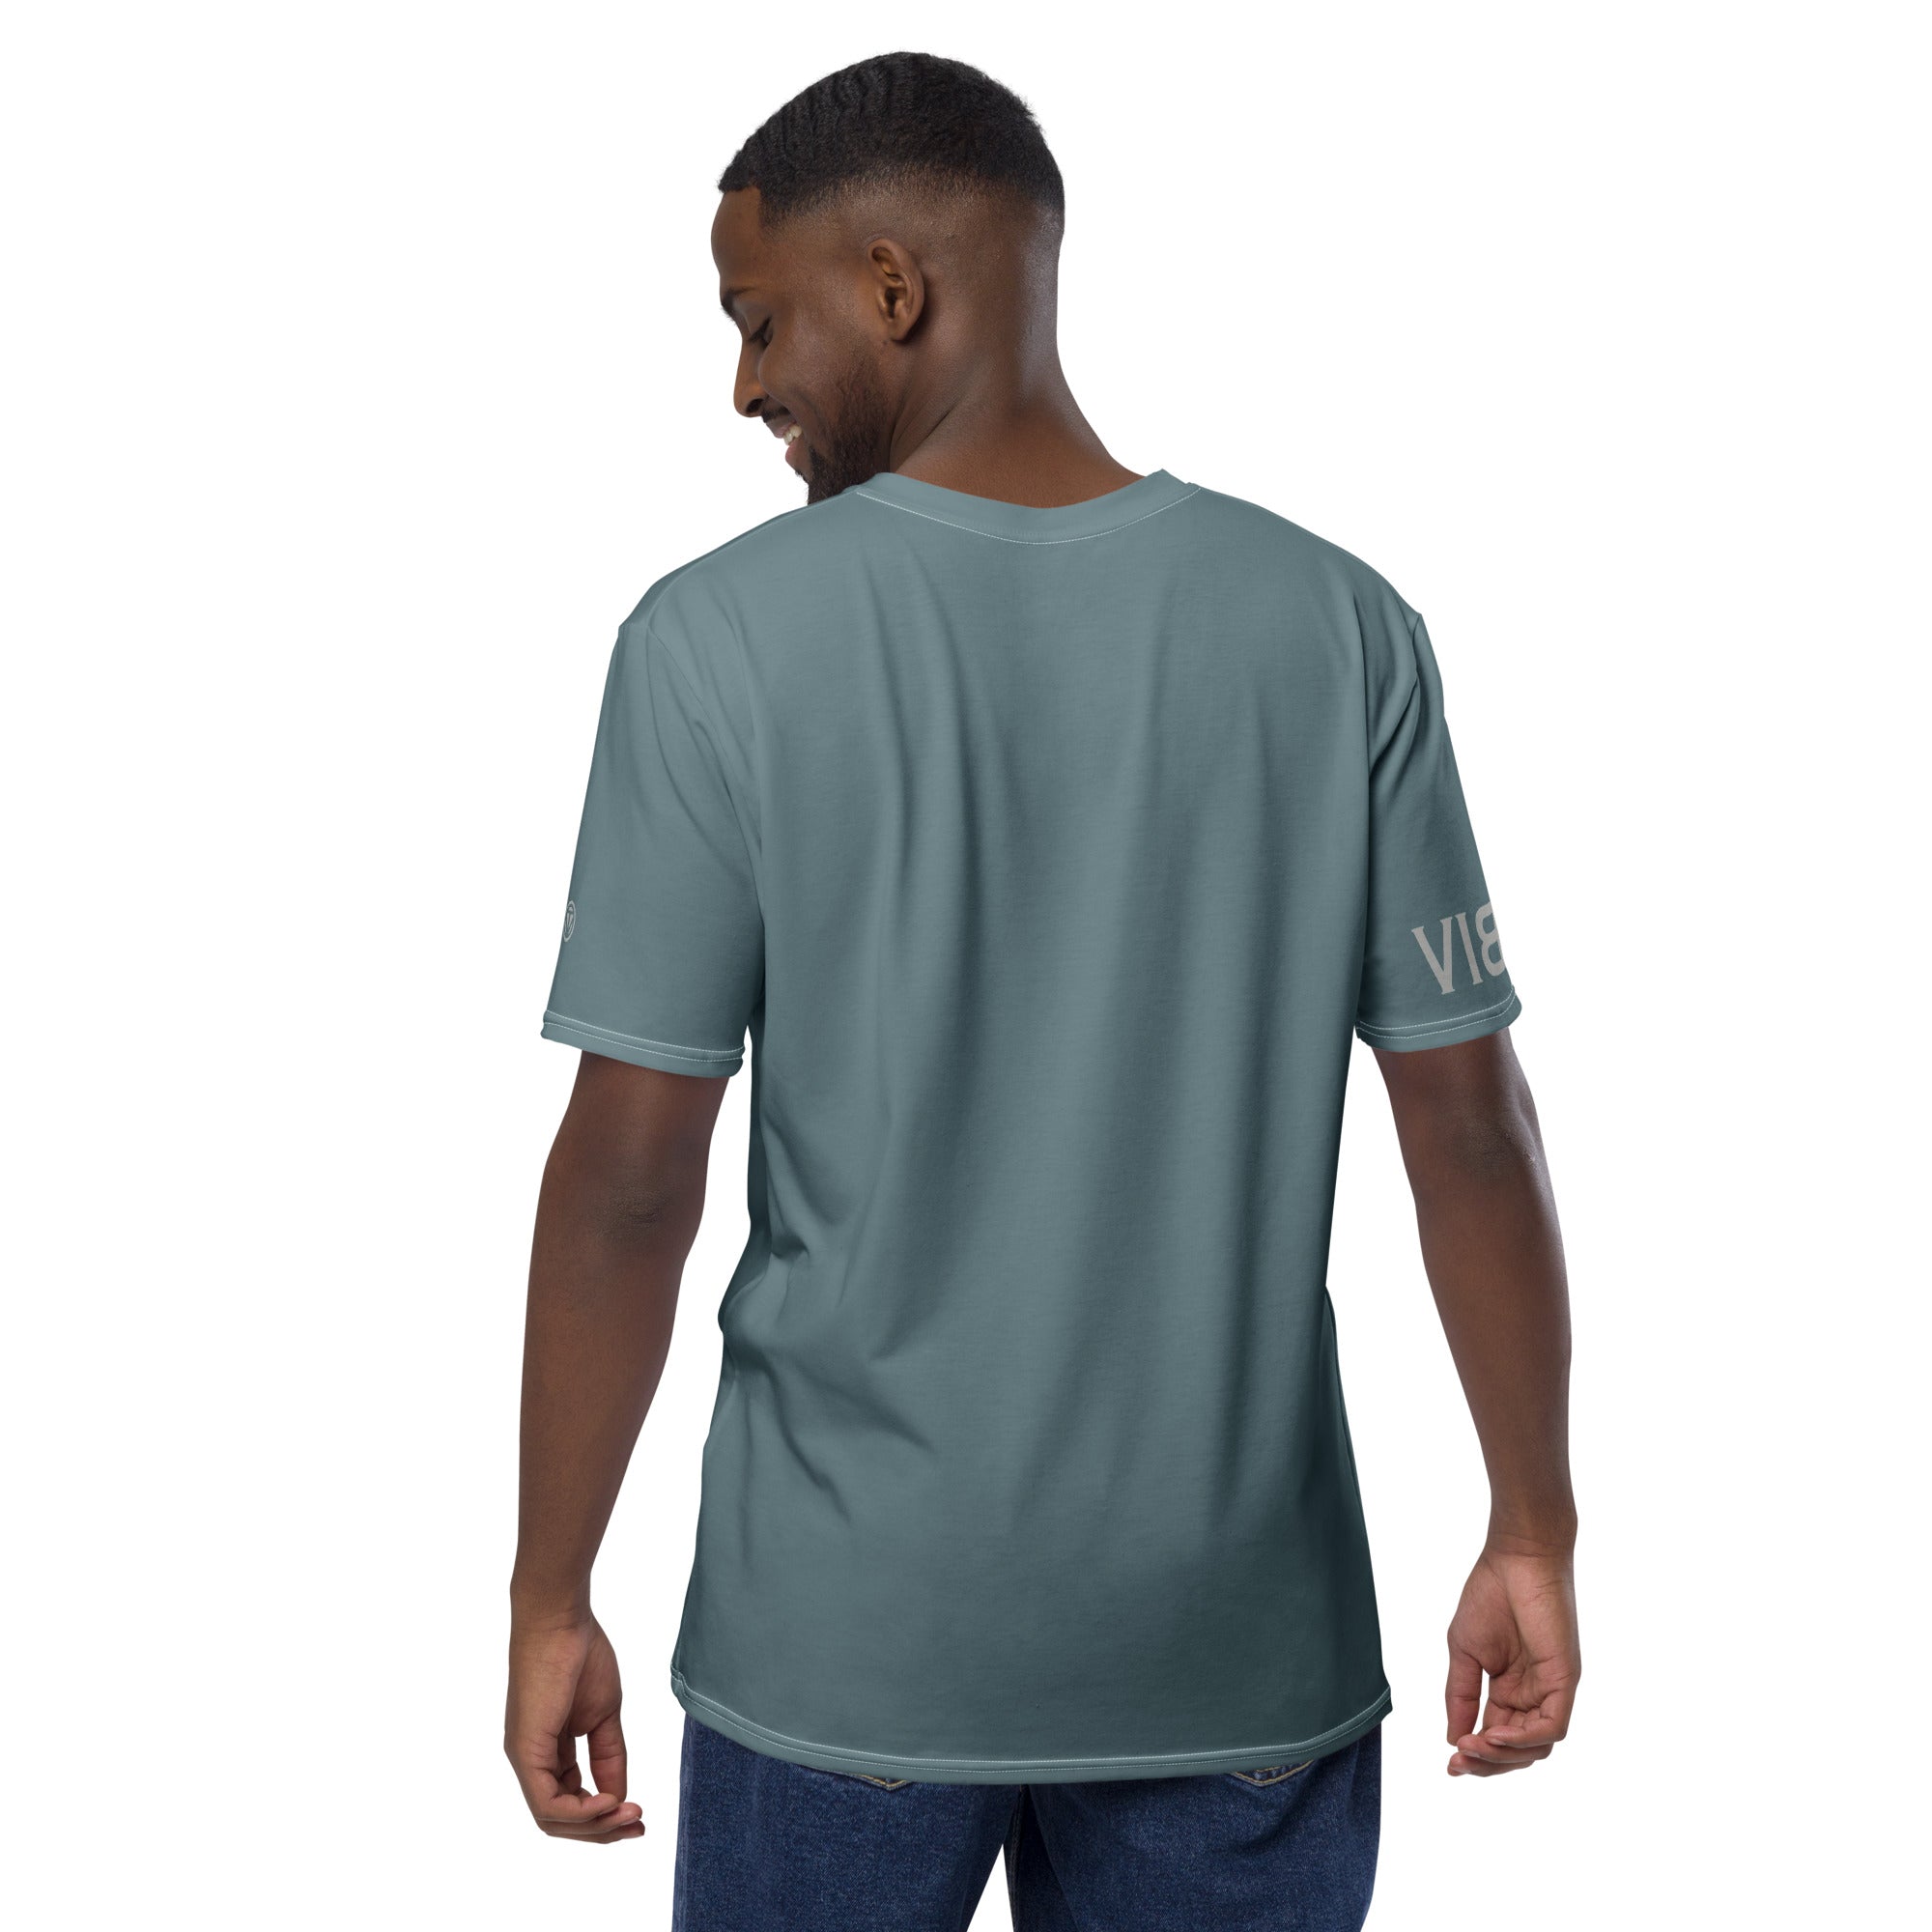 TOV Herren Premium T-Shirt VIBESONE (Graublau/Grau)